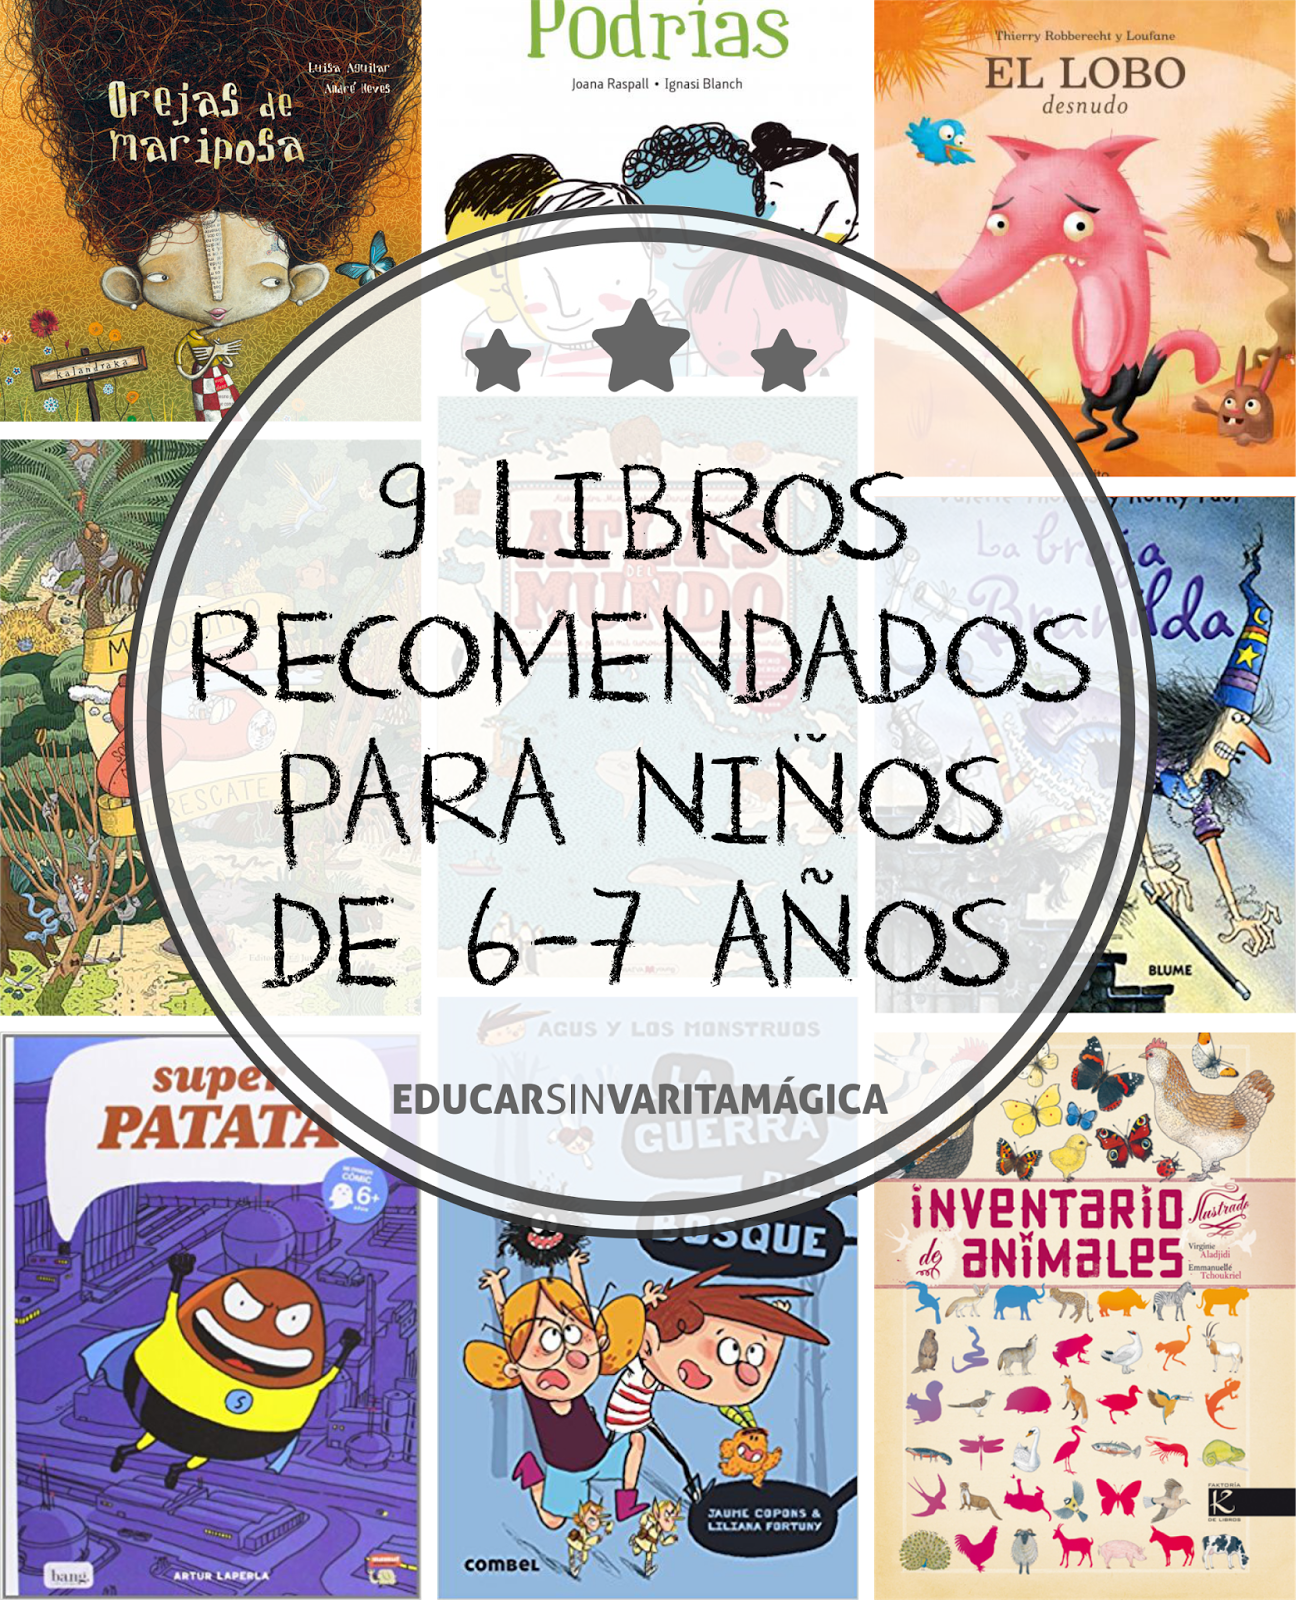 Educar sin varita mágica: Lecturas recomendadas para niños de 6-7 años